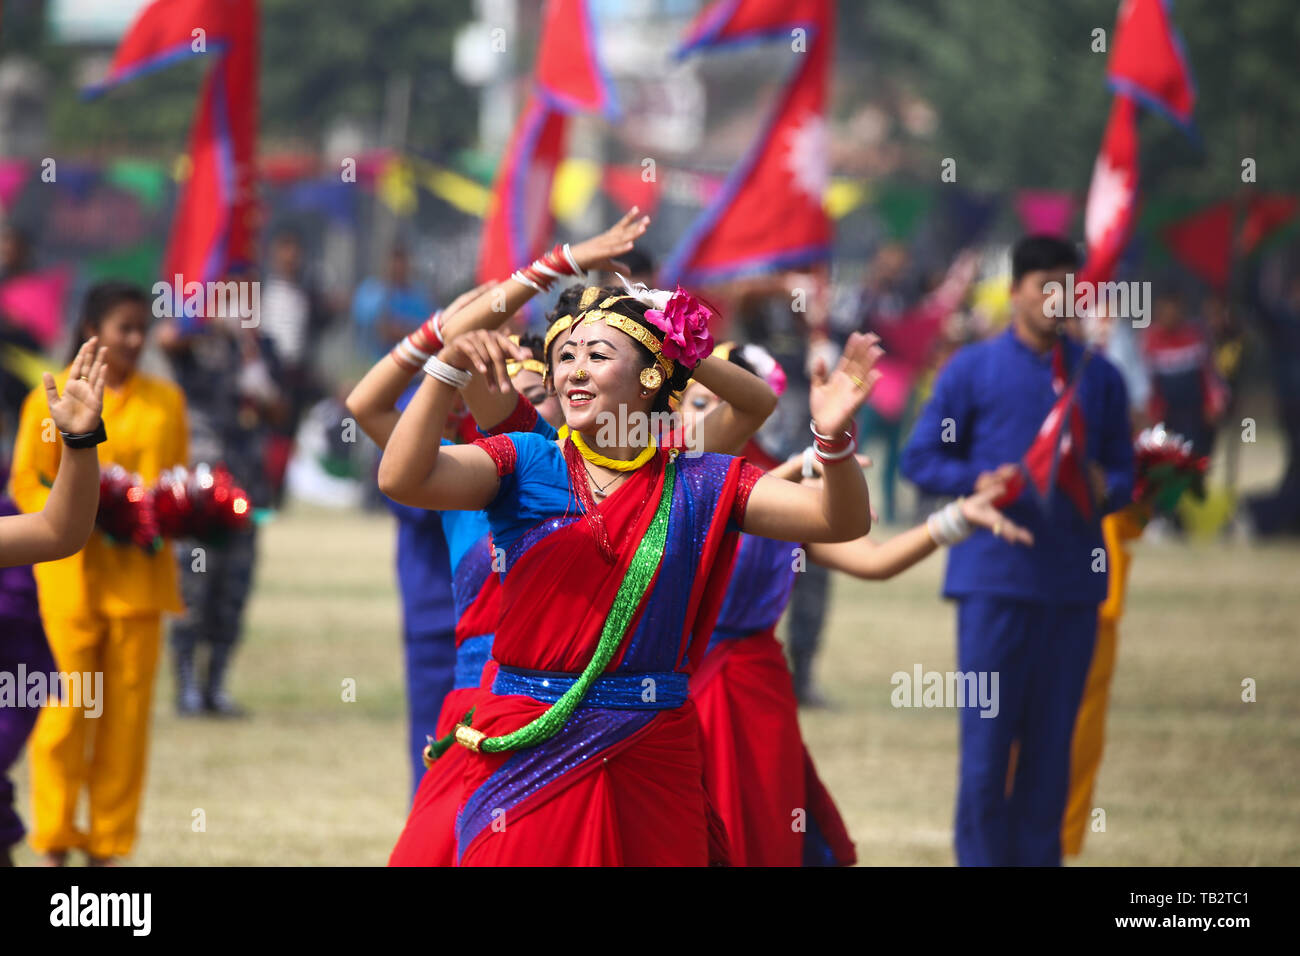 Artistes népalais sont vus au cours de la scène de la fête de la République. L'Assemblée constituante du NÉPAL Le Népal a déclaré une république le 29 mai 2008, se terminant le deux-et-demi-siècle d'une monarchie. Banque D'Images